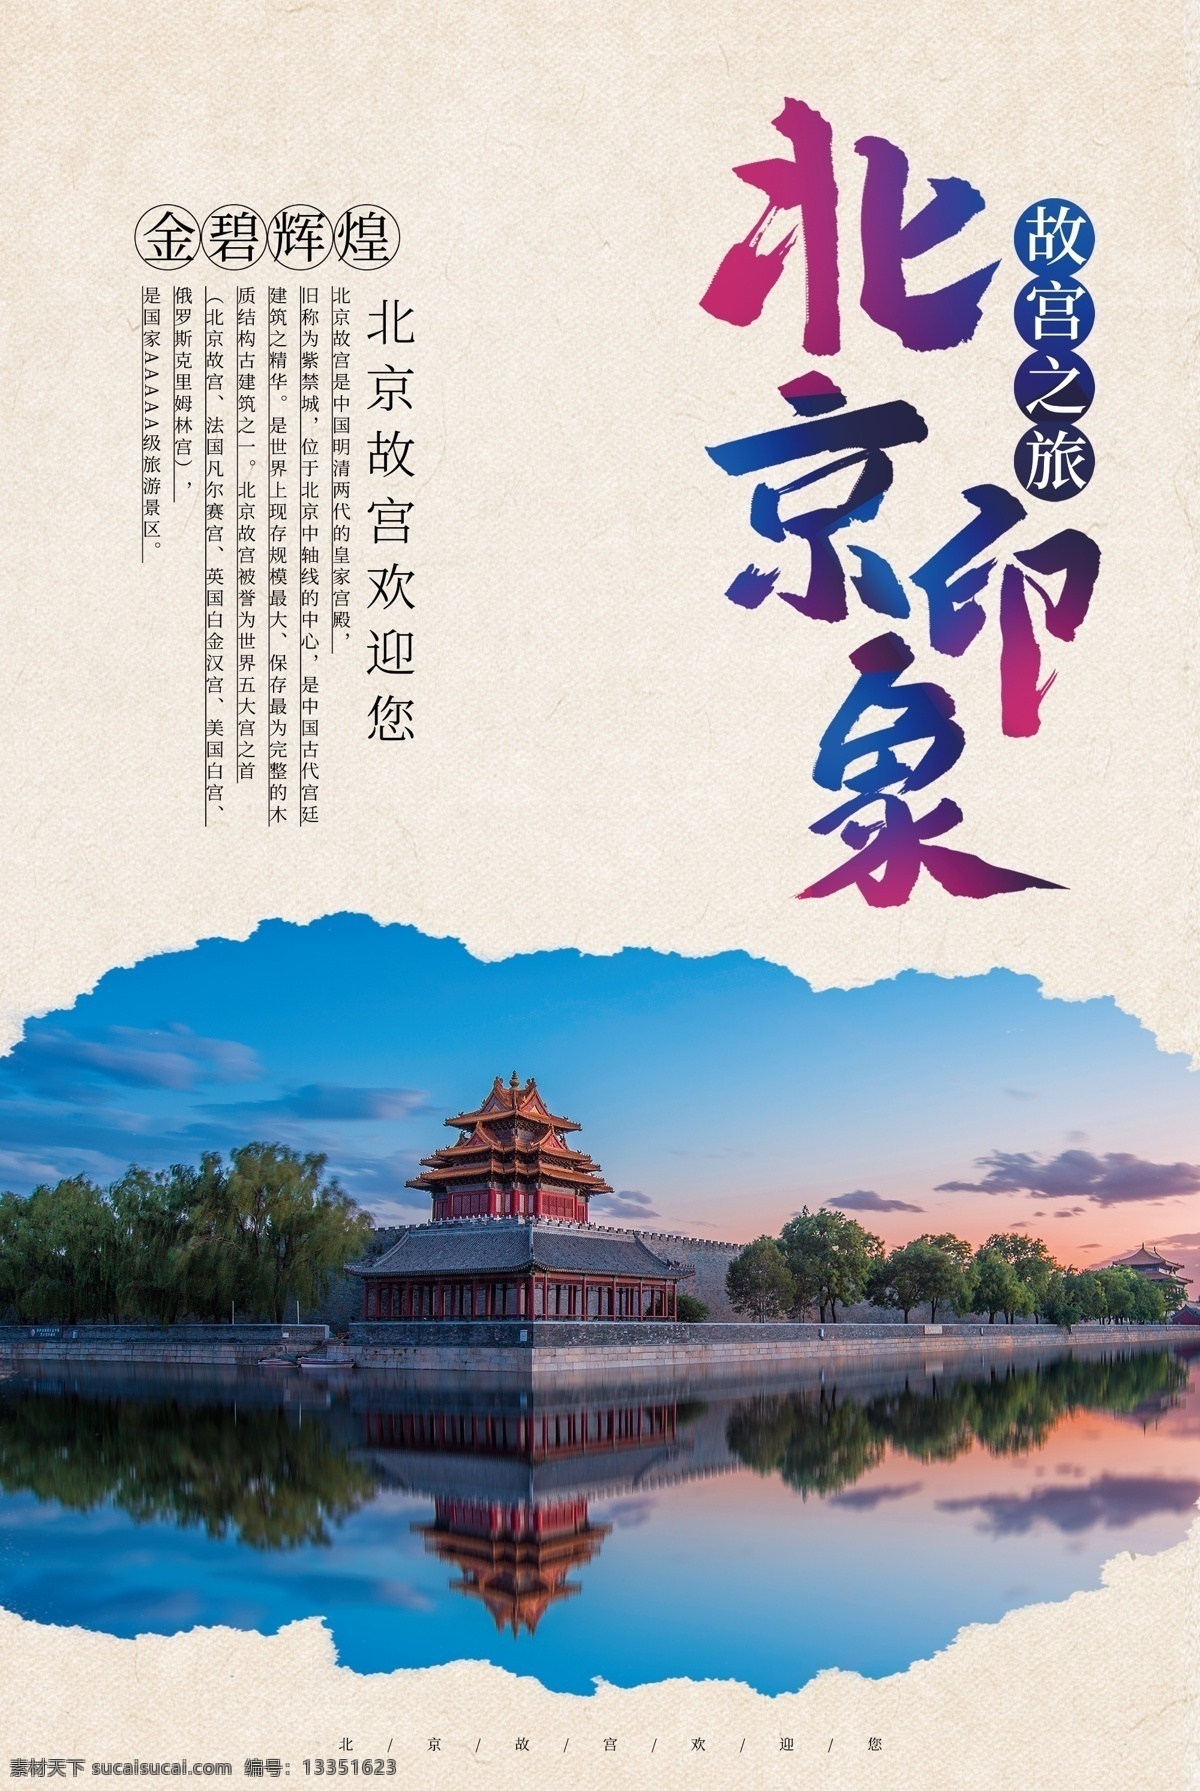 简洁 北京 旅游 海报 旅游海报 北京旅游 北京印章 故宫之旅 故宫 紫禁城